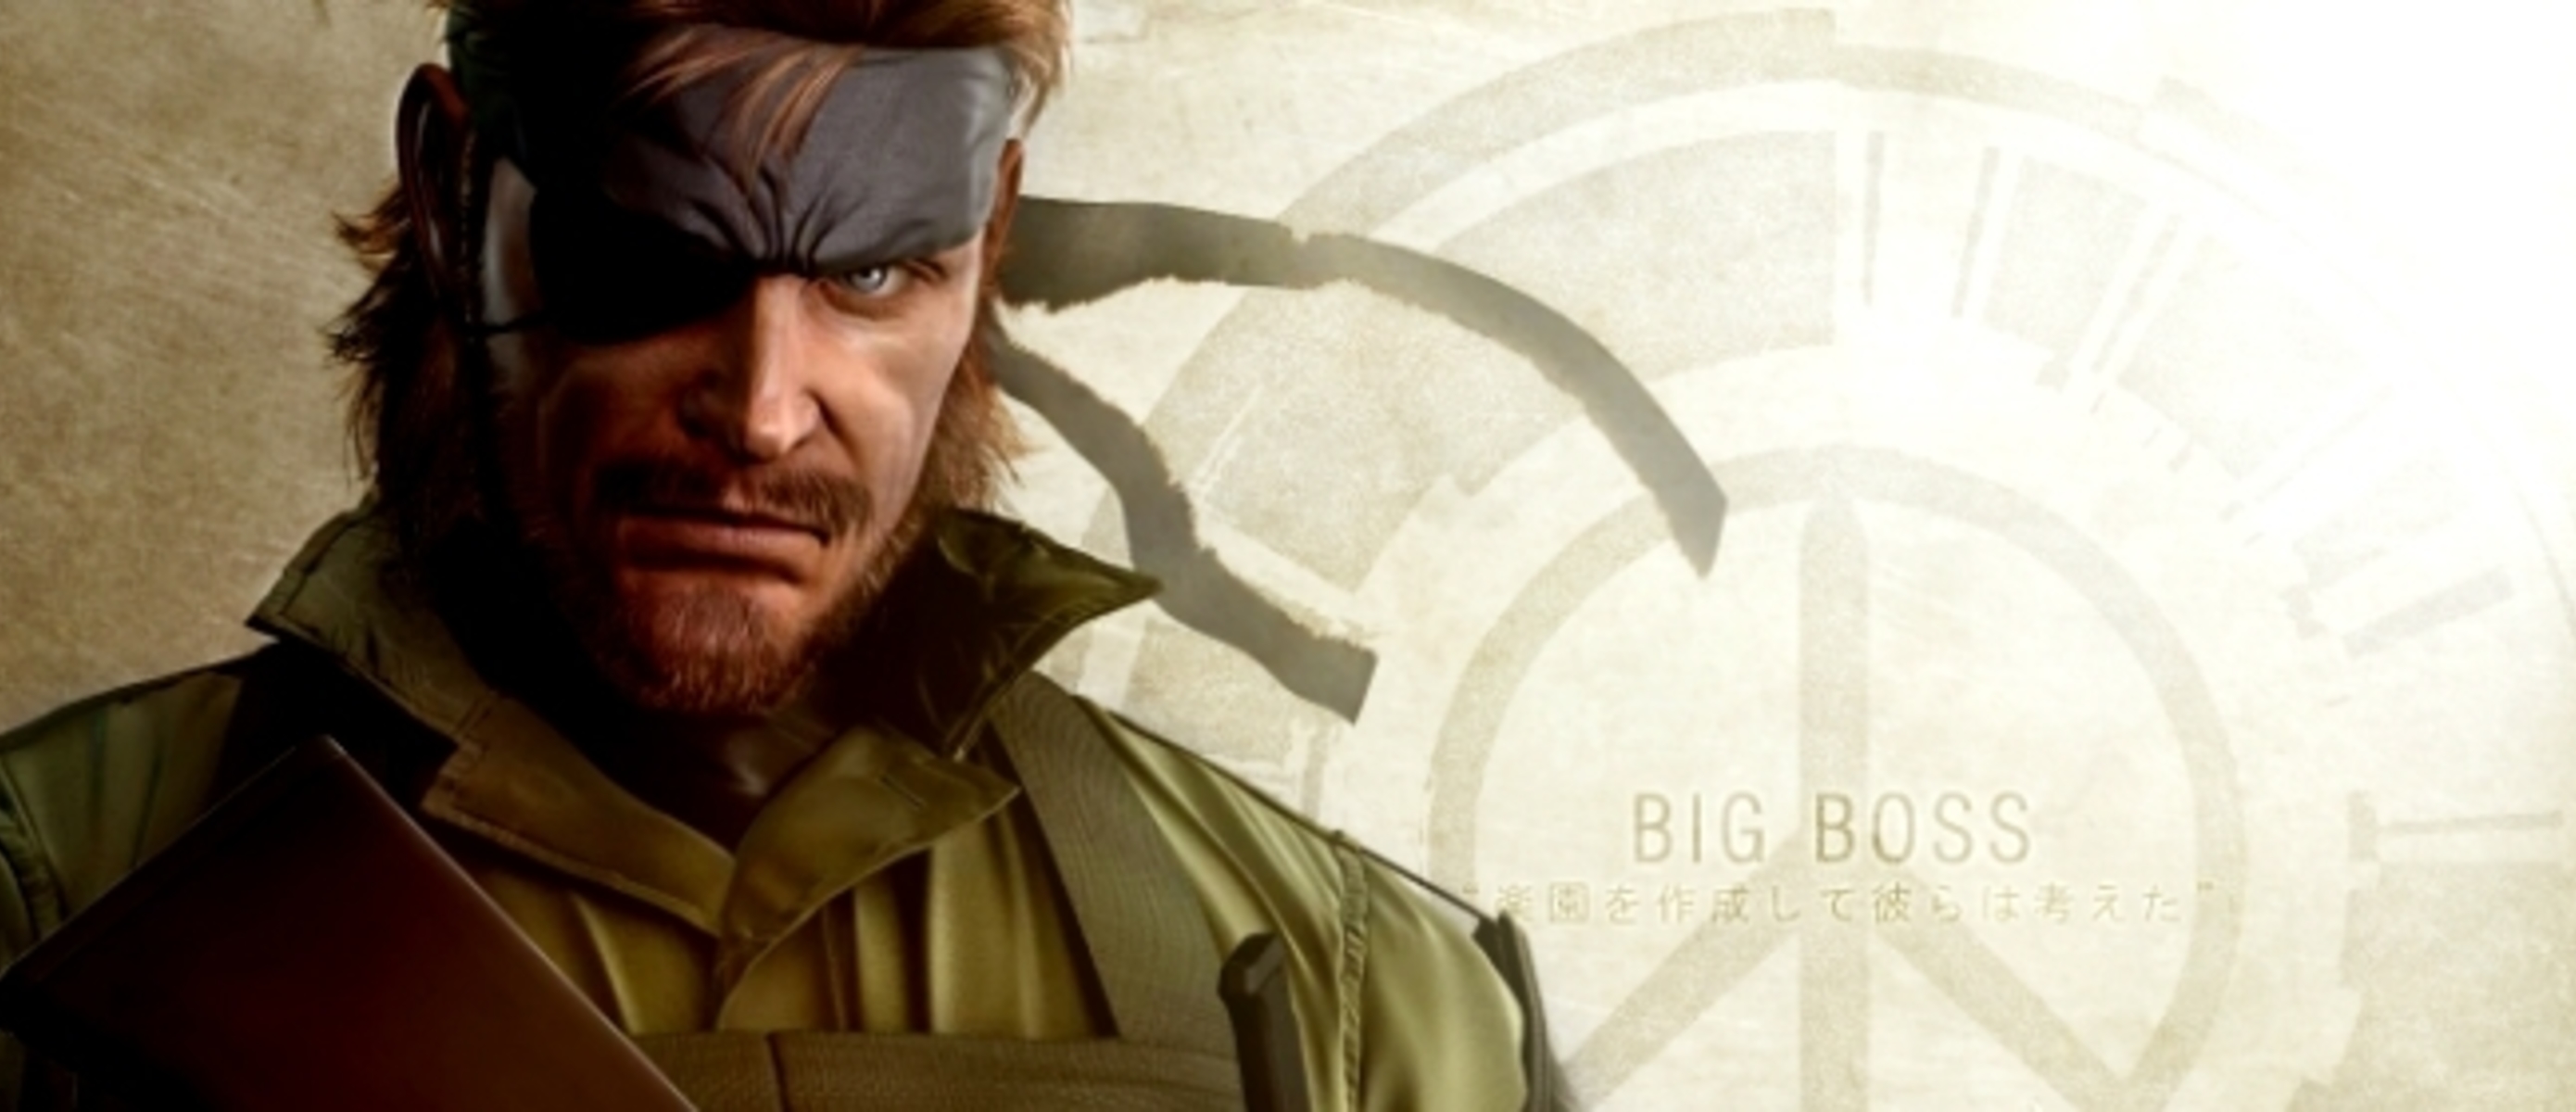 Big Boss MGS Peace Walker. Биг босс Metal Gear Solid Peace Walker. MGS Peace Walker ps3. Биг босс (Metal Gear) фото. Her big boss